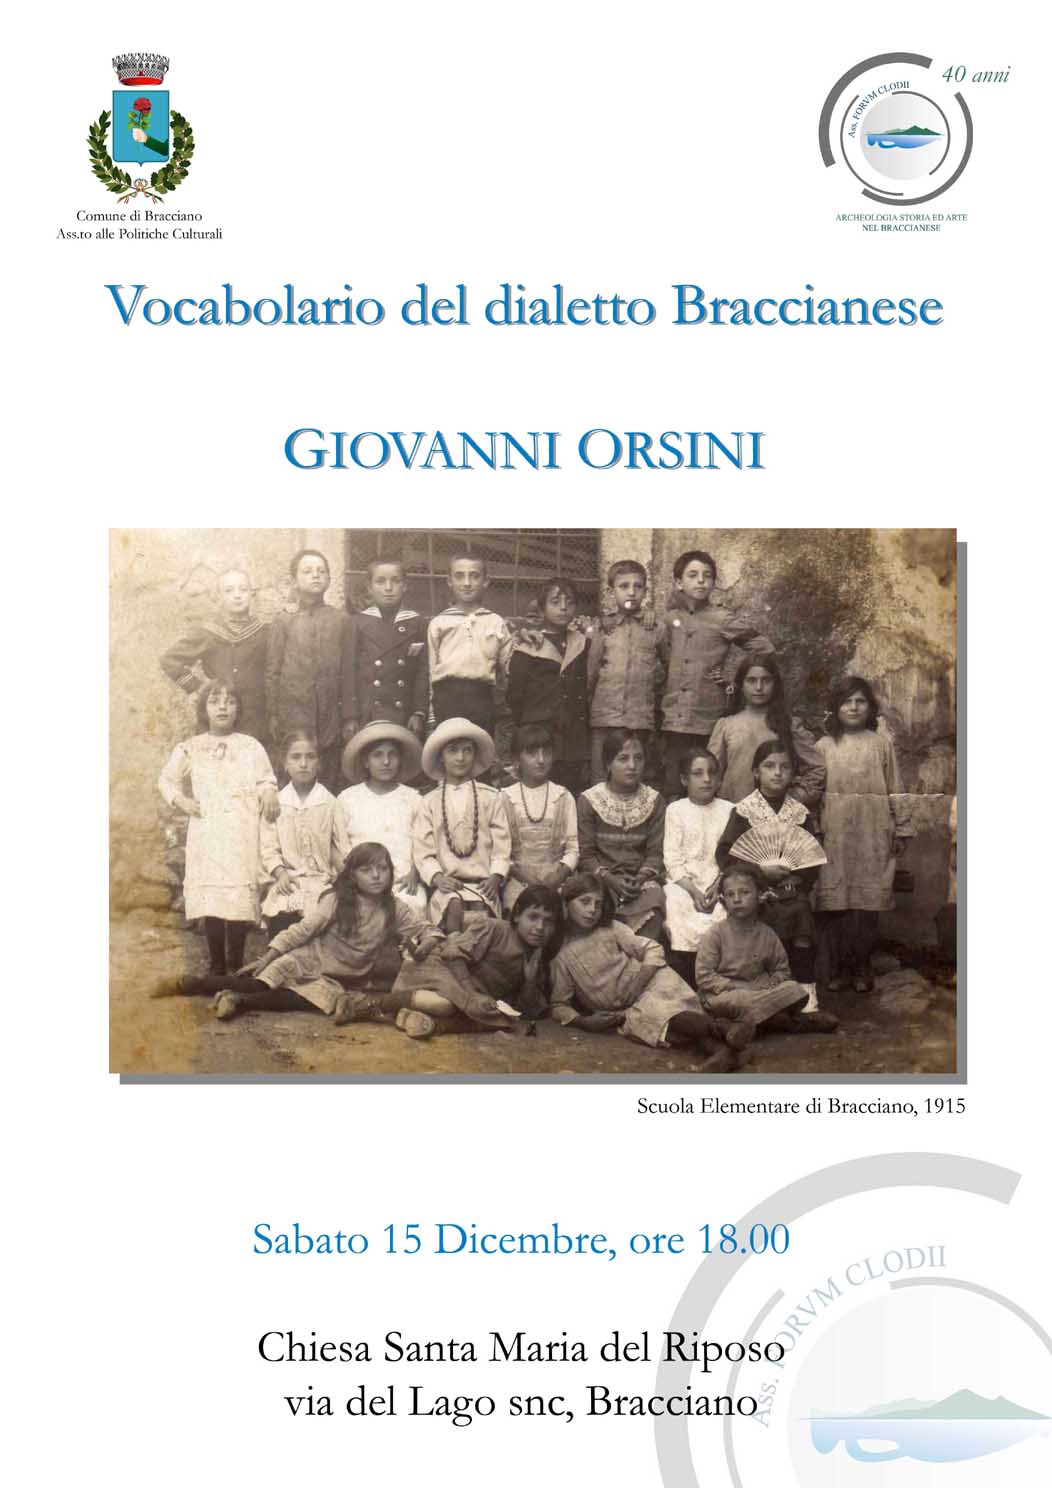  - 279-Orsini Dicembre 2012